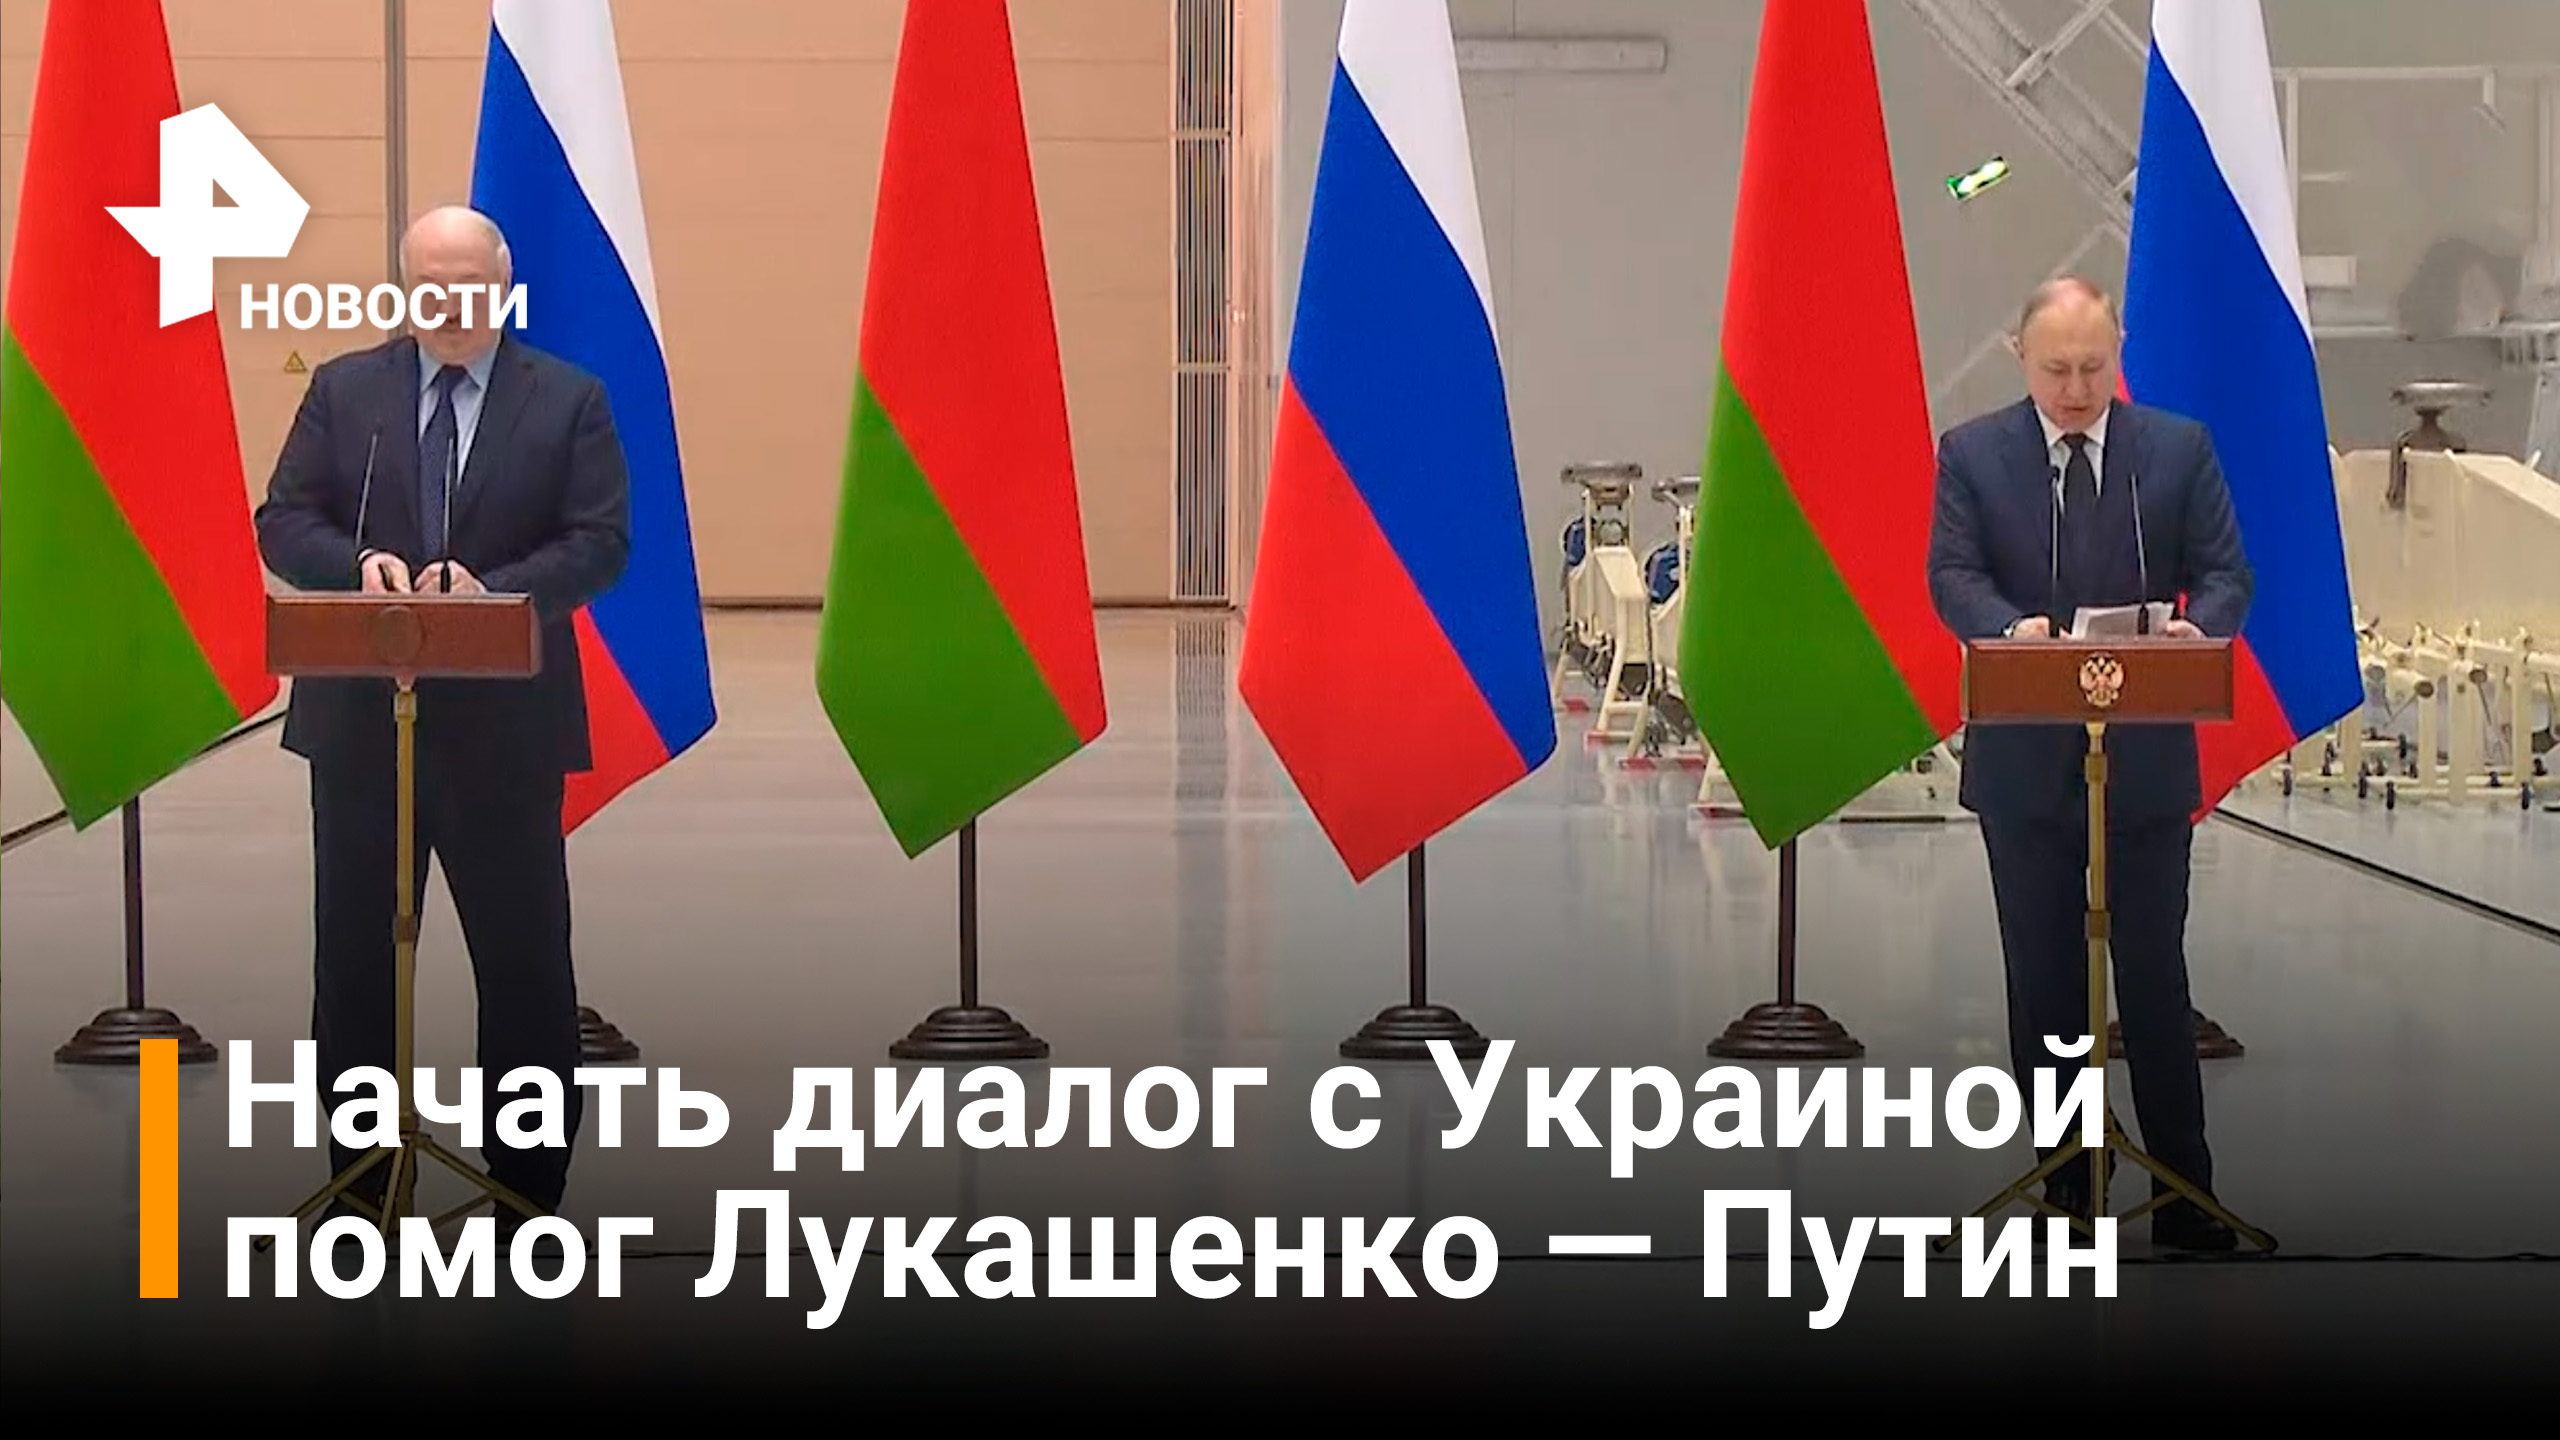 Путин рассказал Лукашенко о ходе переговоров с Украиной / РЕН Новости